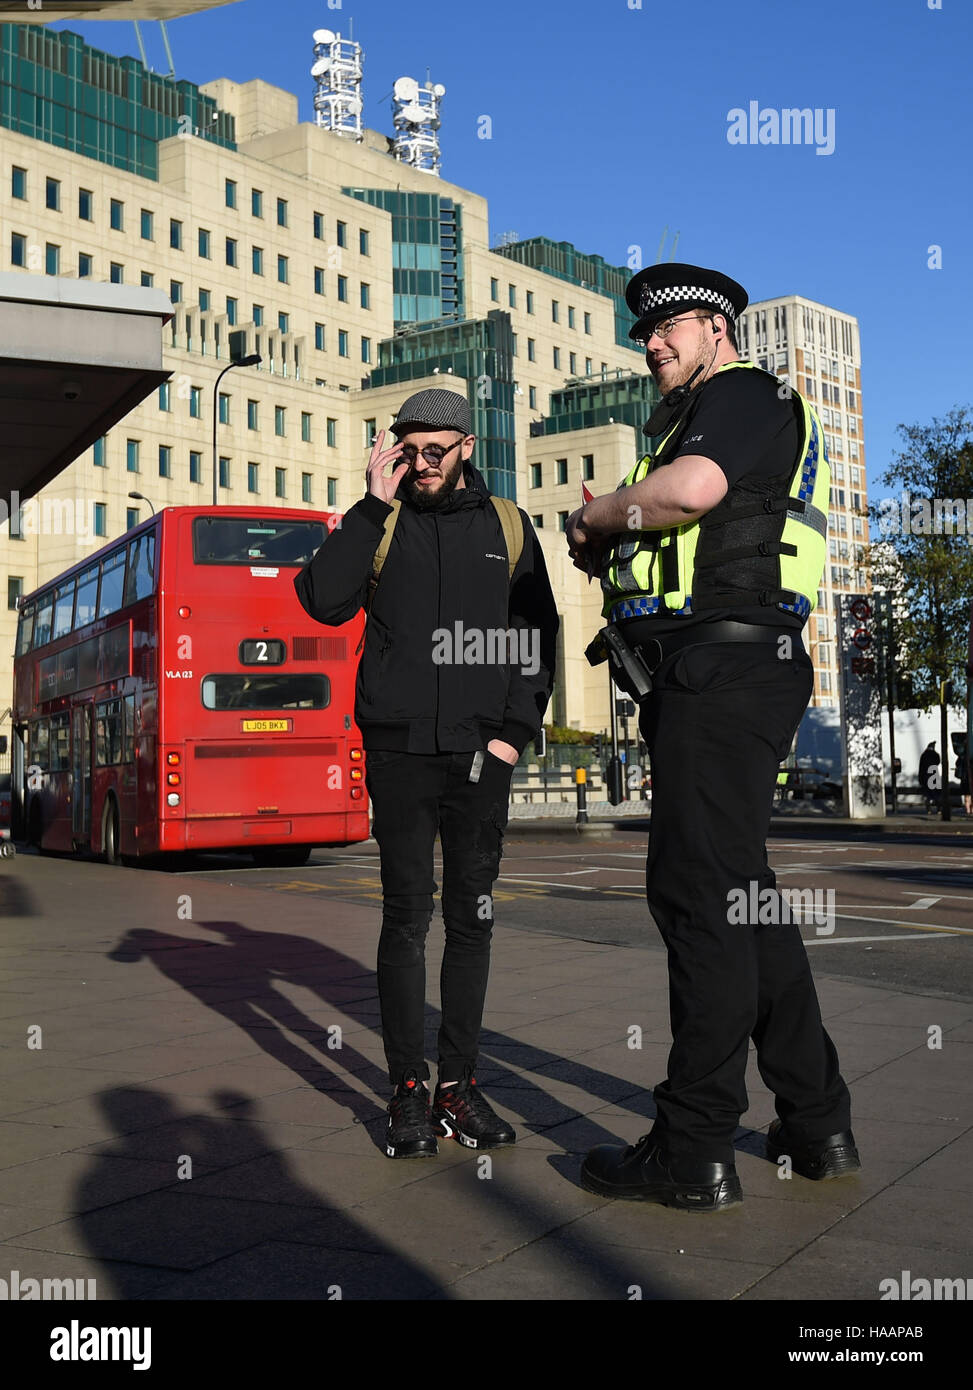 Ein Polizist spricht ein Pendler vor der Secret Intelligence Service, Gebäude, das Hauptquartier des MI6, Vauxhall Busbahnhof in Süd-London, um die Einführung des Anti-Terror-Patrouille Polizeieinheiten quer durch die Hauptstadt zu markieren. Stockfoto